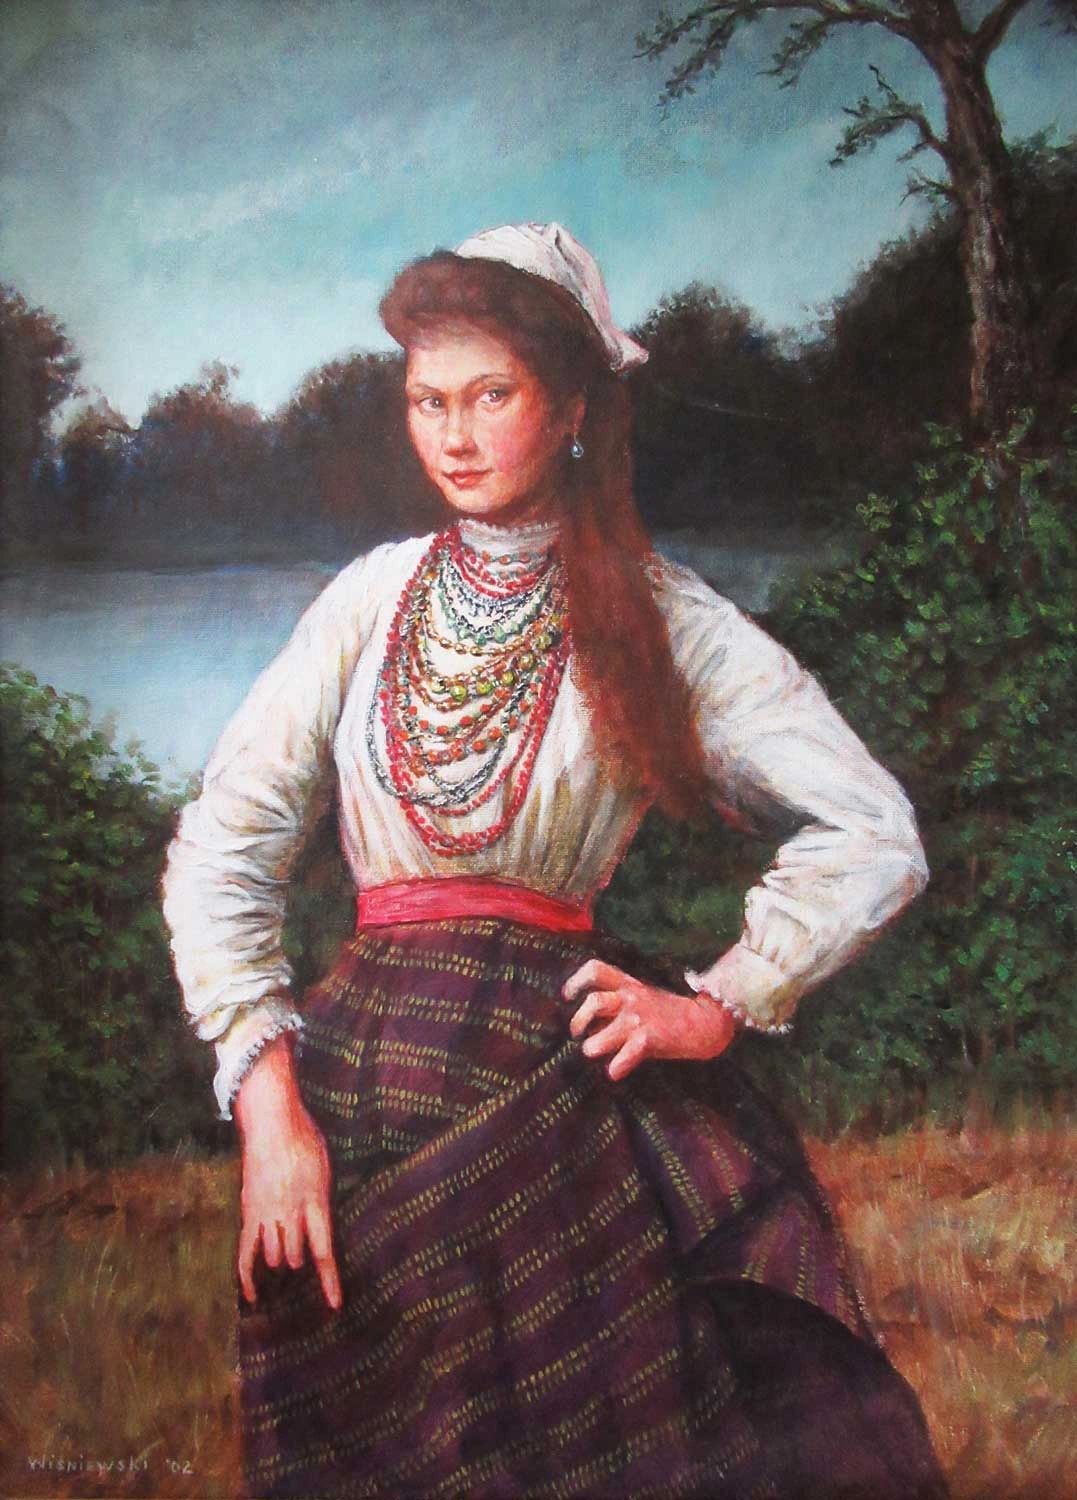 Gypsy woman, Acrylic painting by Stan Wisniewski. 